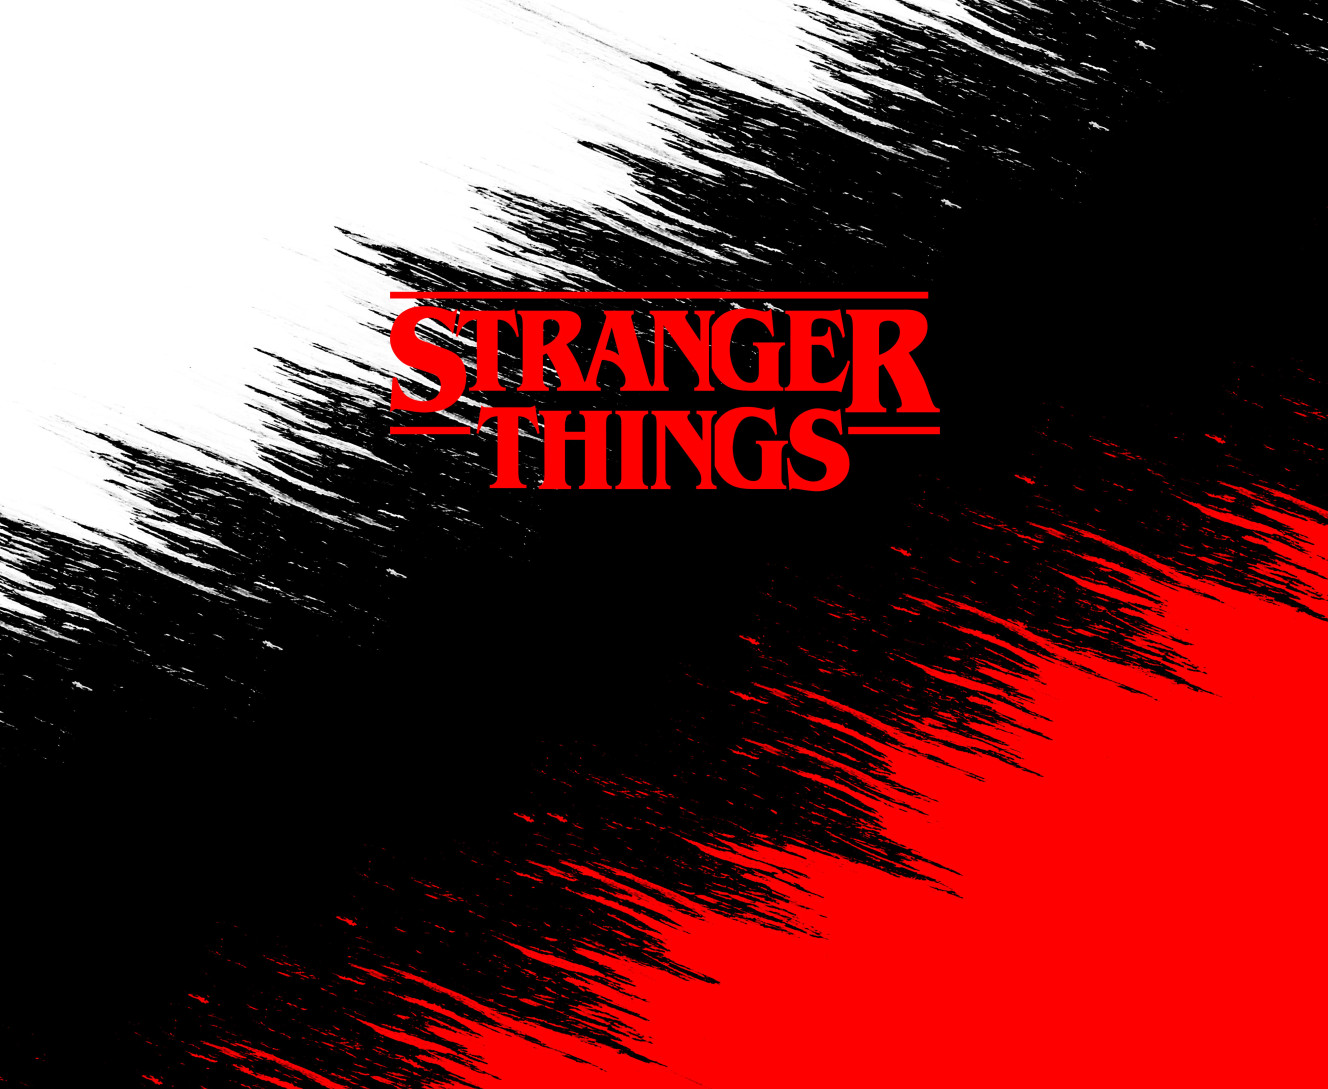 Stranger Things [1]